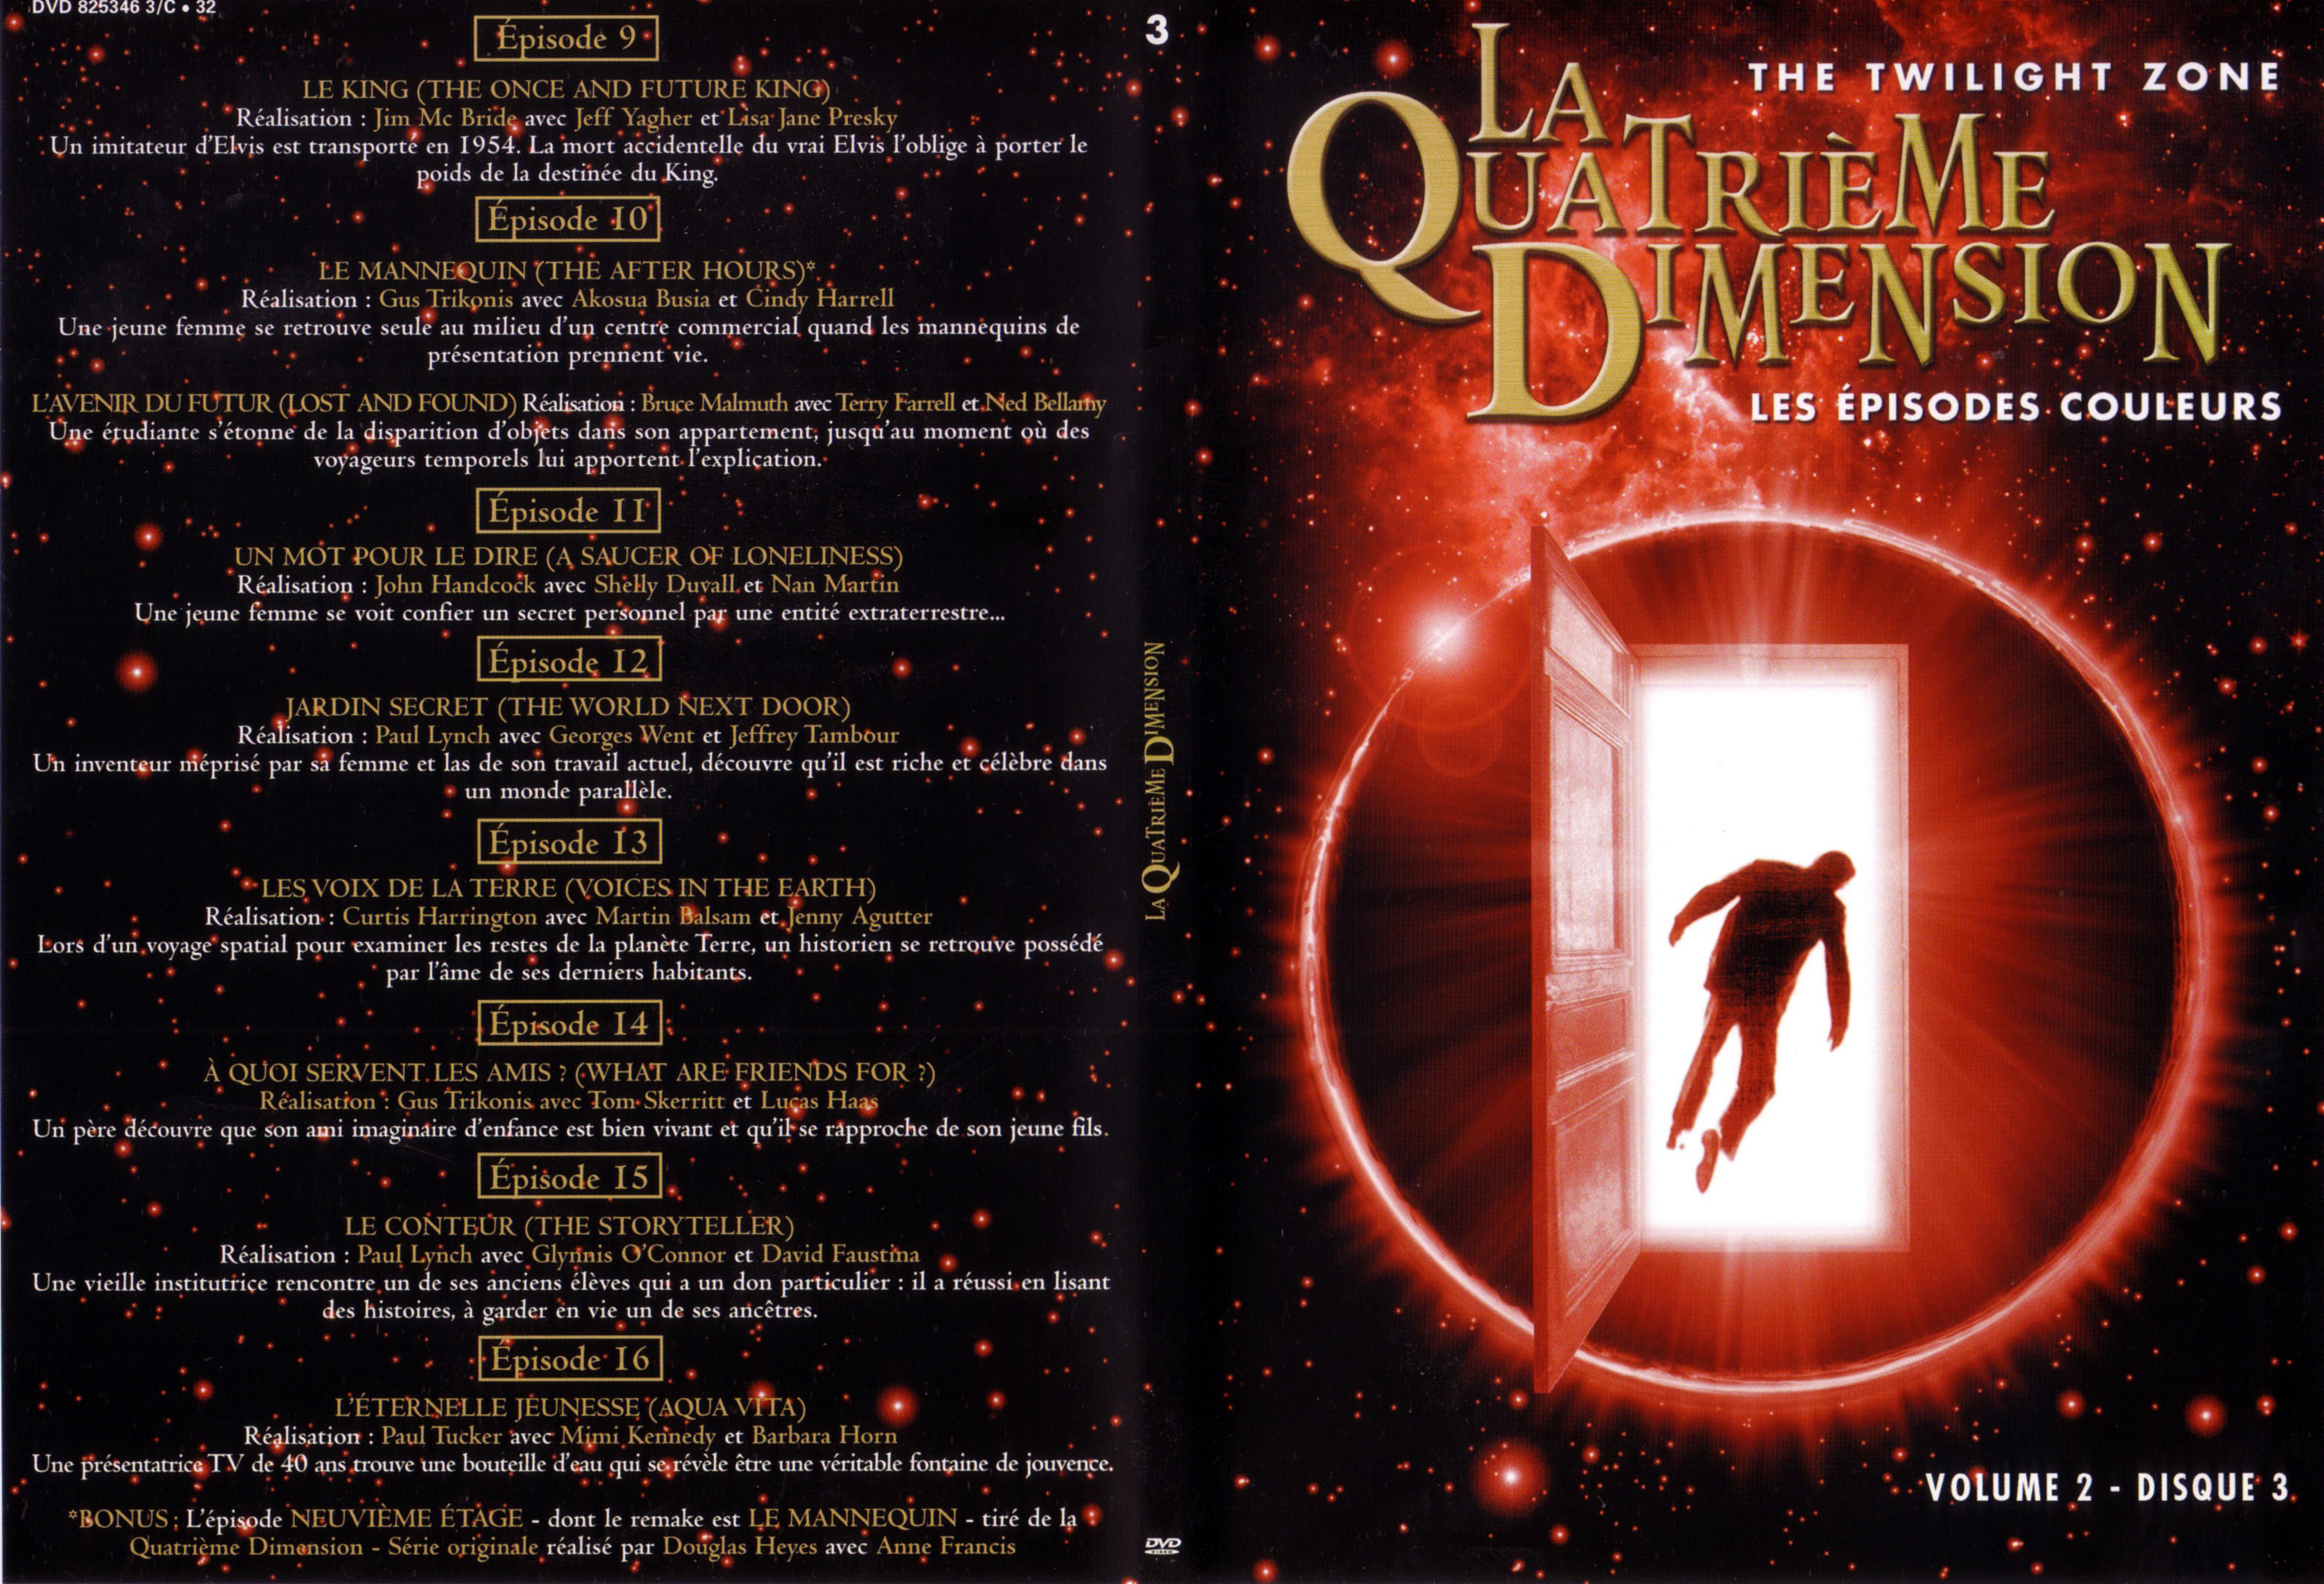 Jaquette DVD La quatrime dimension - Episodes couleurs vol 2 DVD 3